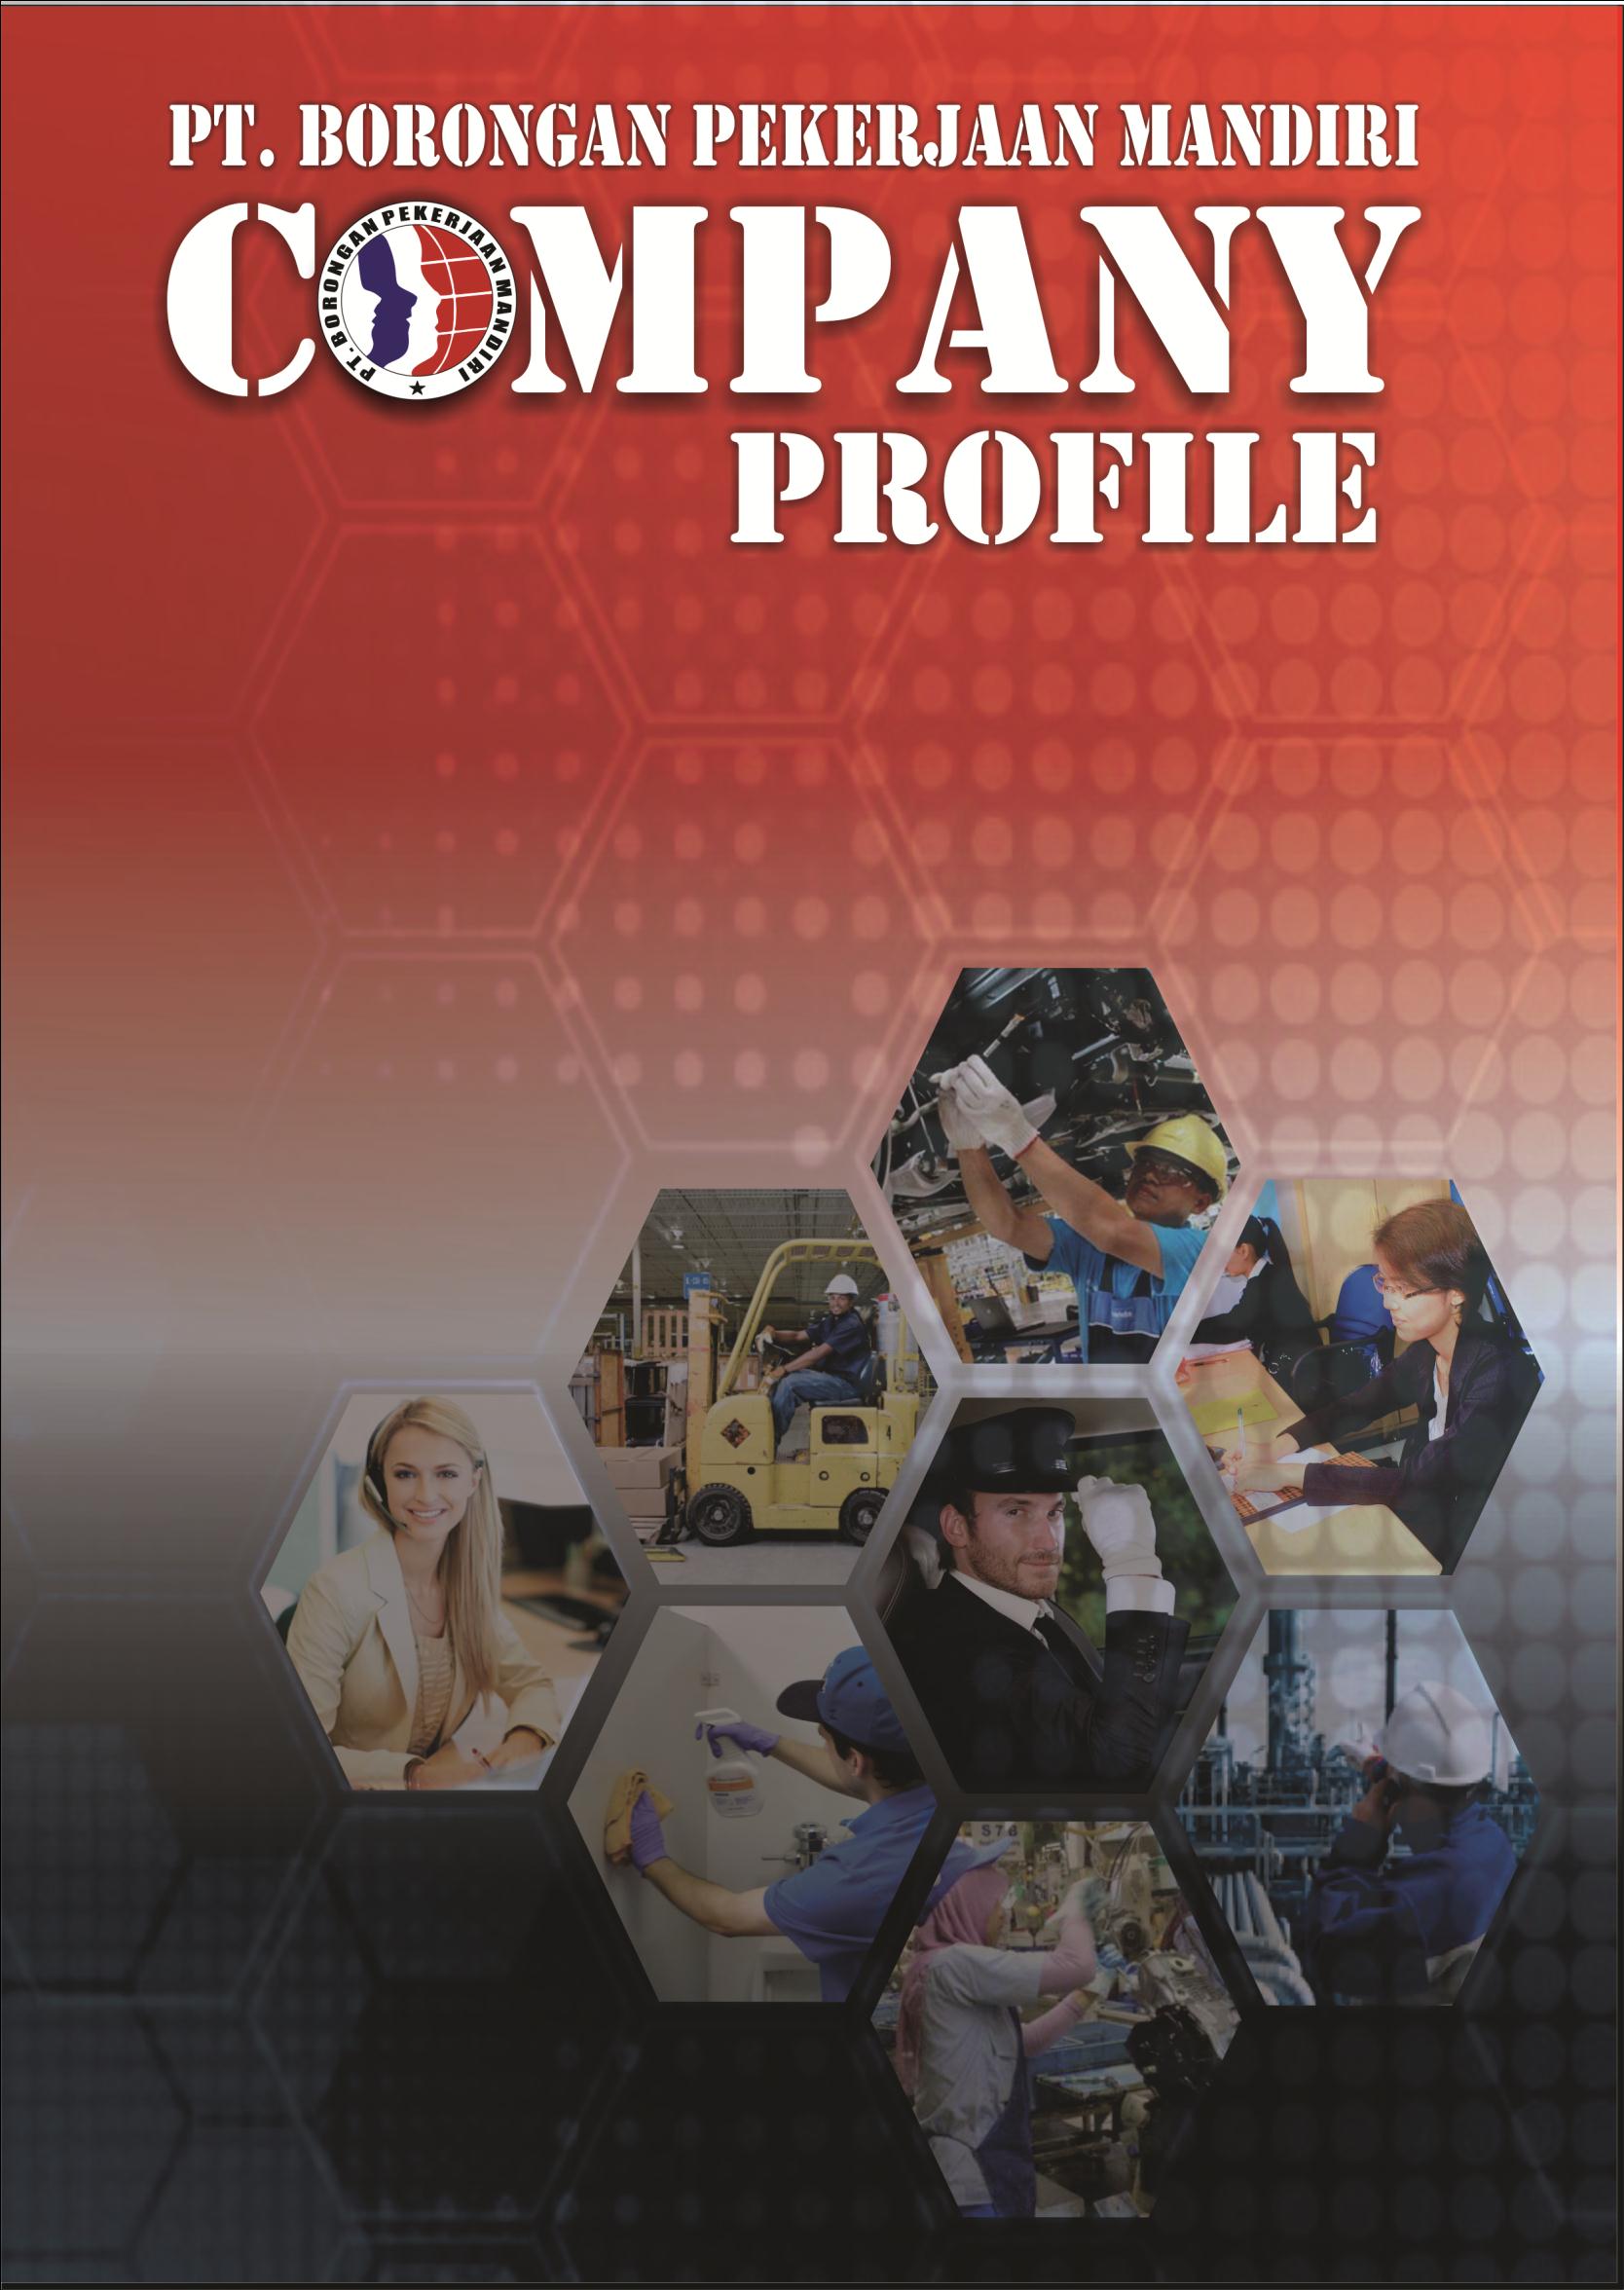 Company Profile Perusahaan Pemborongan Pekerjaan Mandiri 